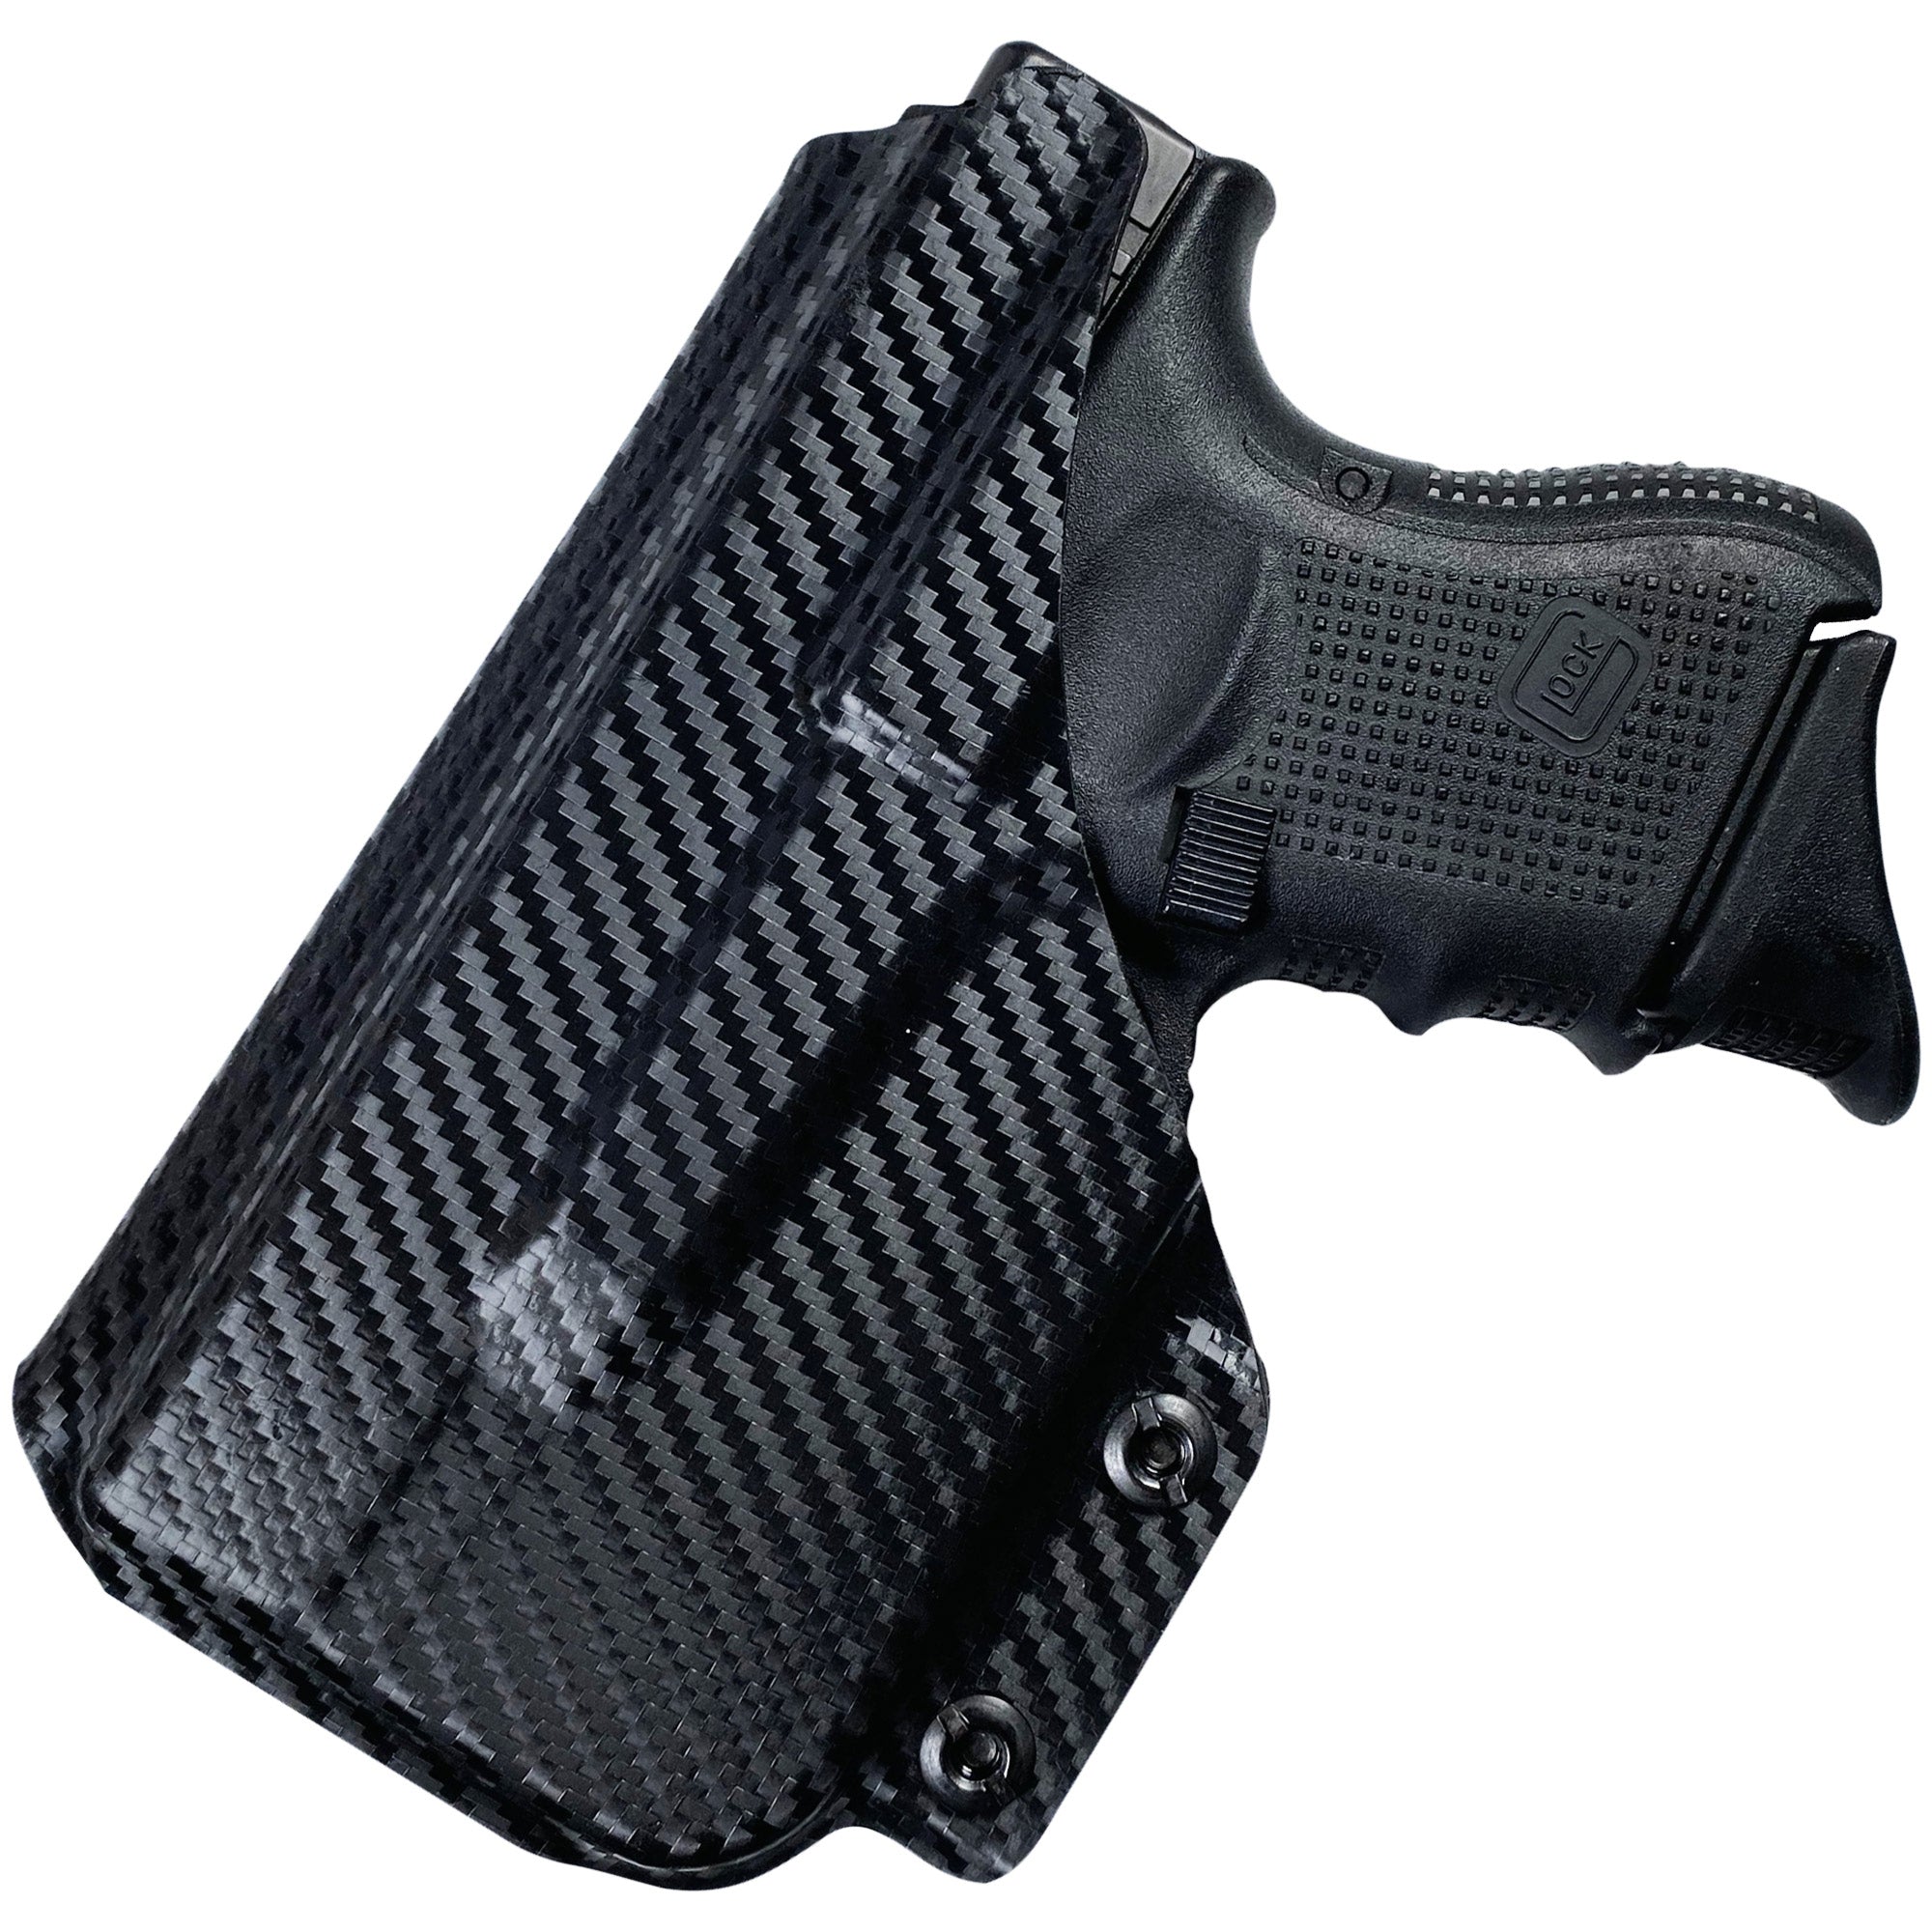 Glock-27-tlr6-holster-in-carbon-fiber